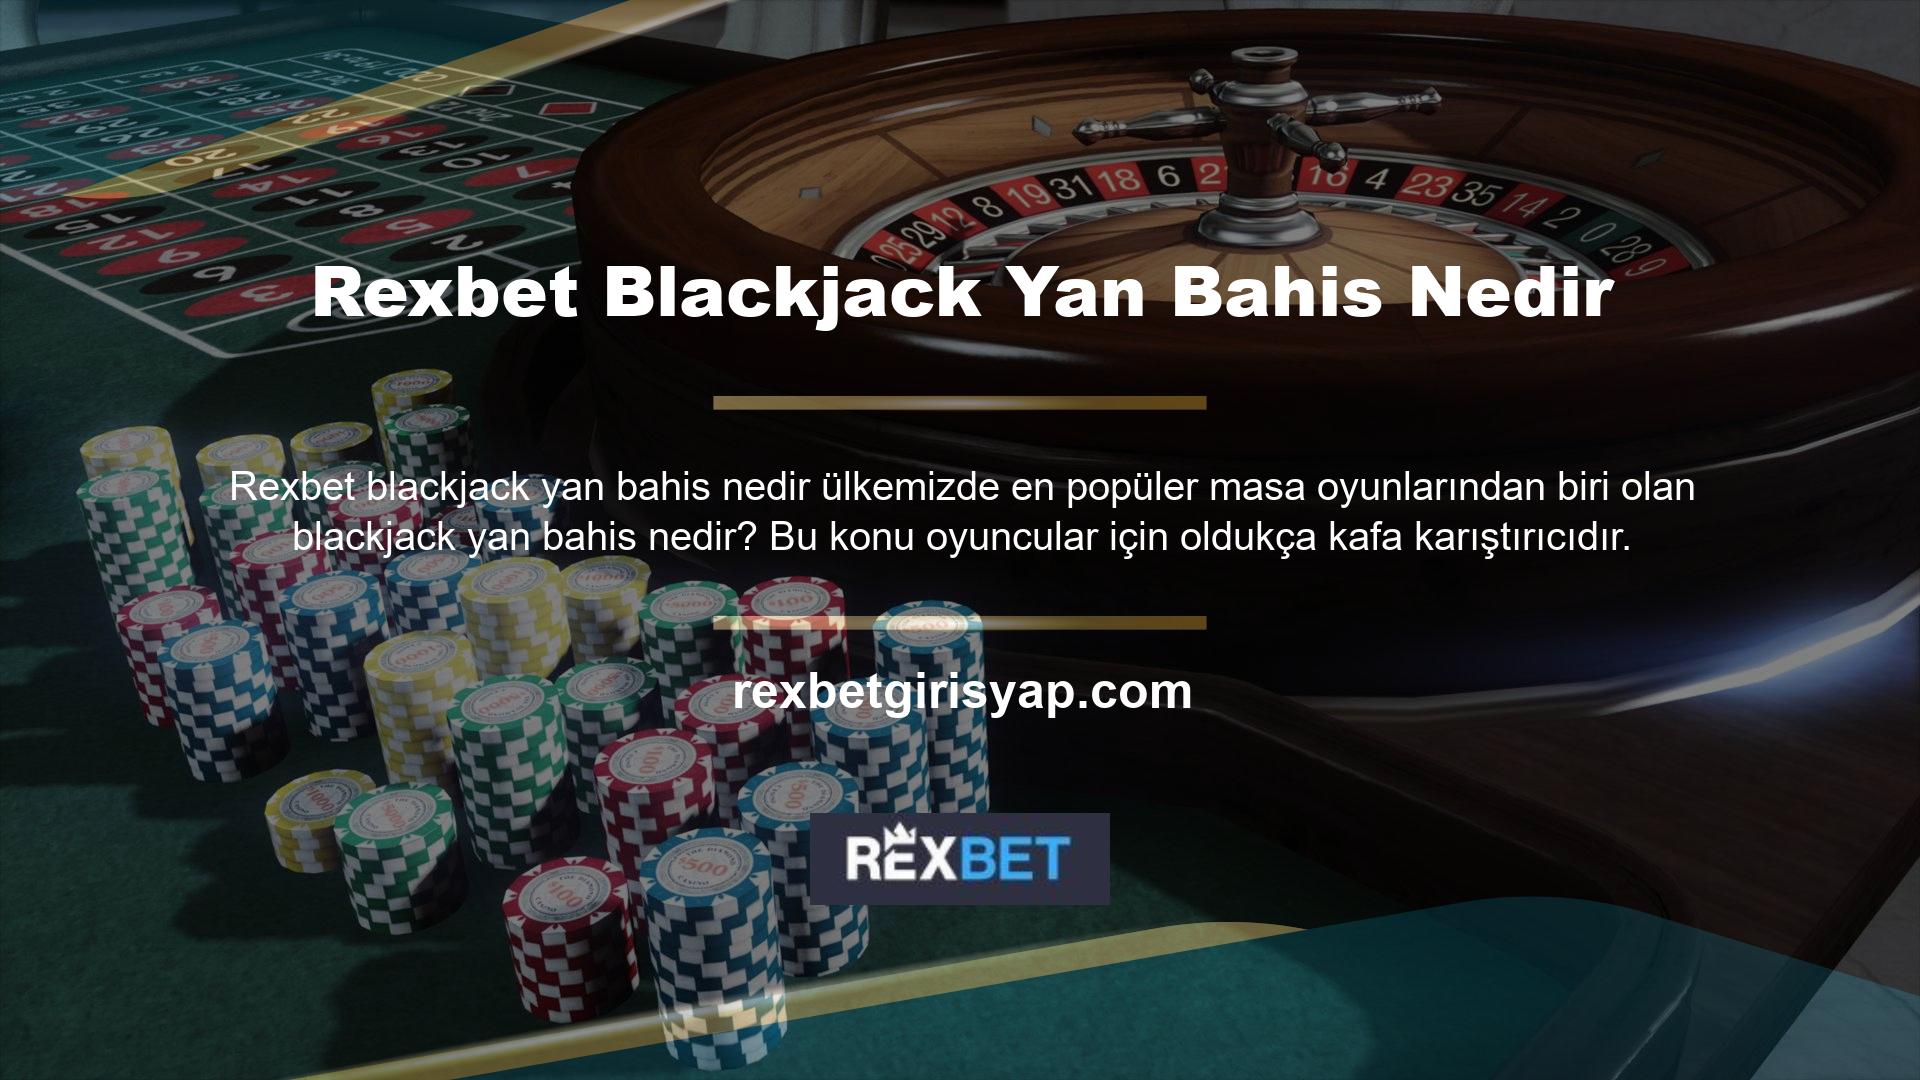 Özellikle oyuncuların casino oyunlarına olan ilgisinin artması nedeniyle Blackjack son yılların en popüler oyunlarından biri haline geldi